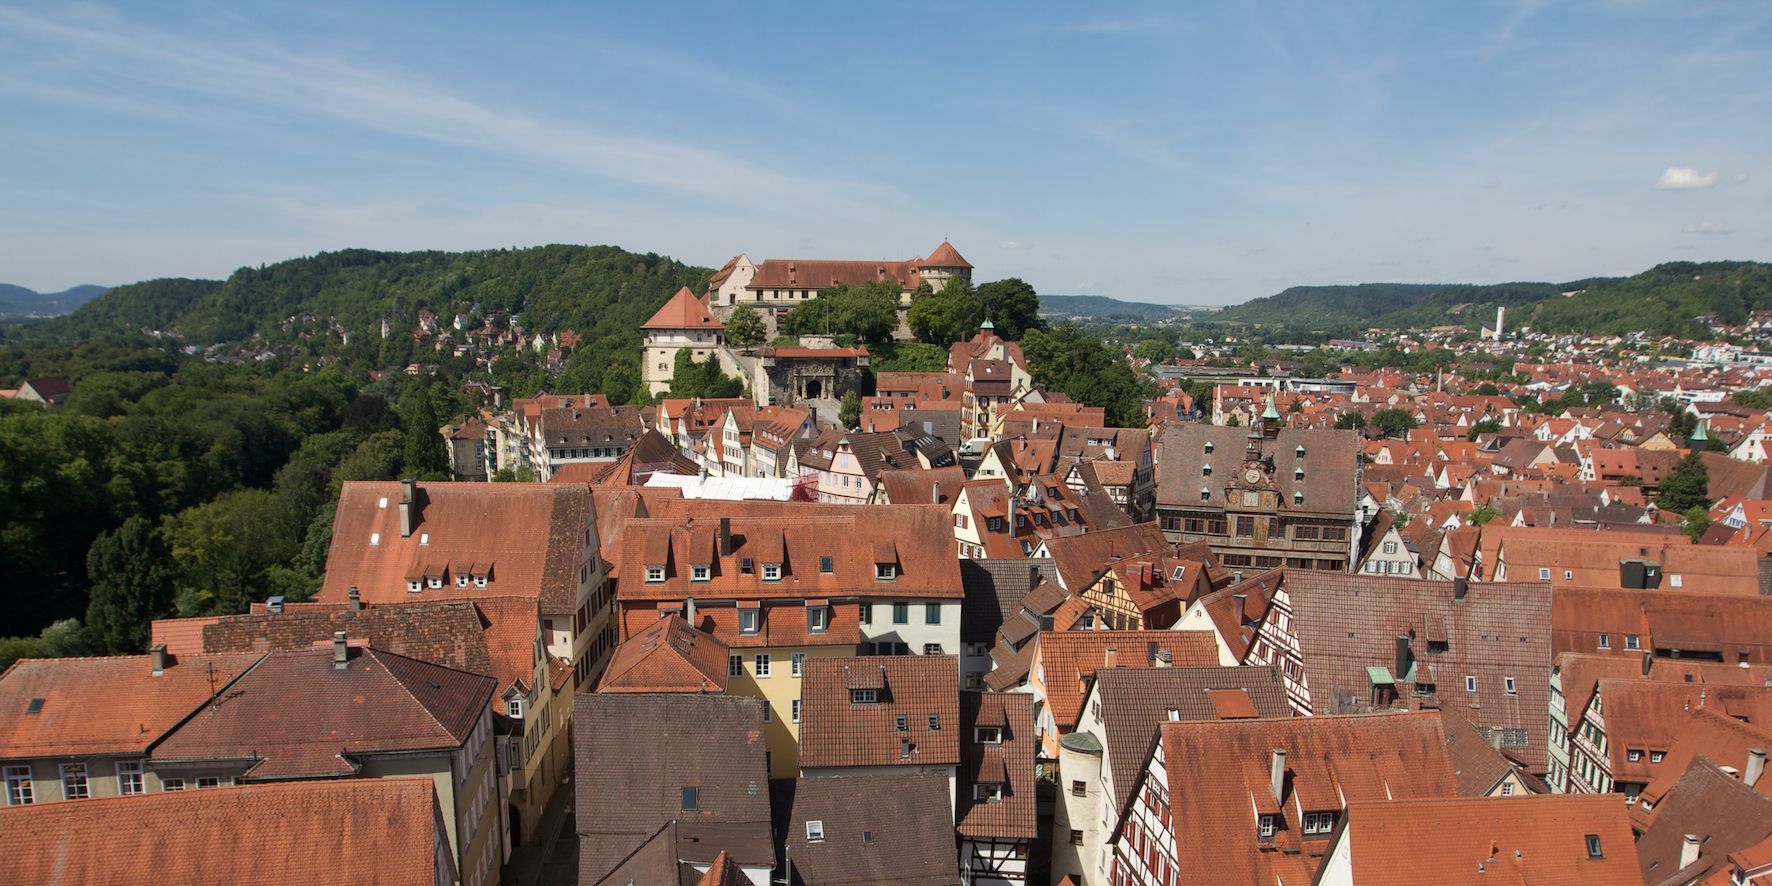 Tübingen’s old town